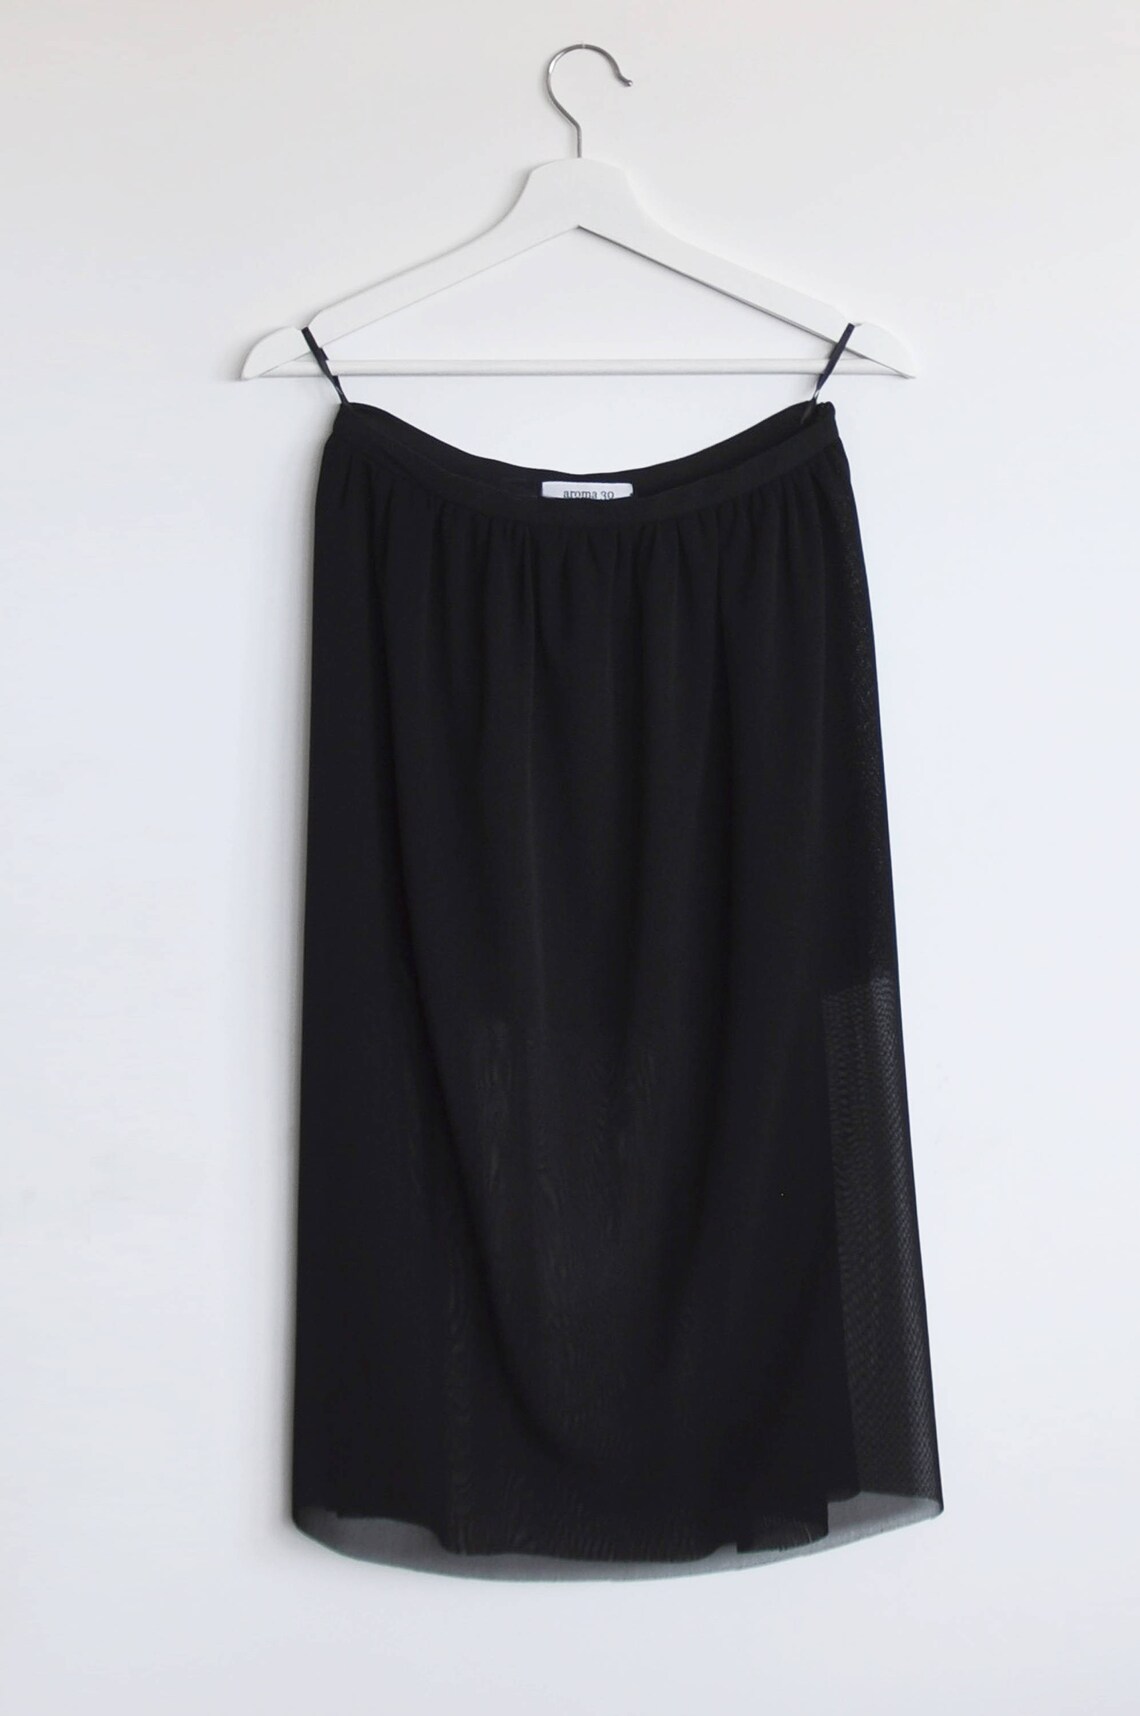 Preorder BESTSELLER Black Tulle skirt See through Midi skirt | Etsy